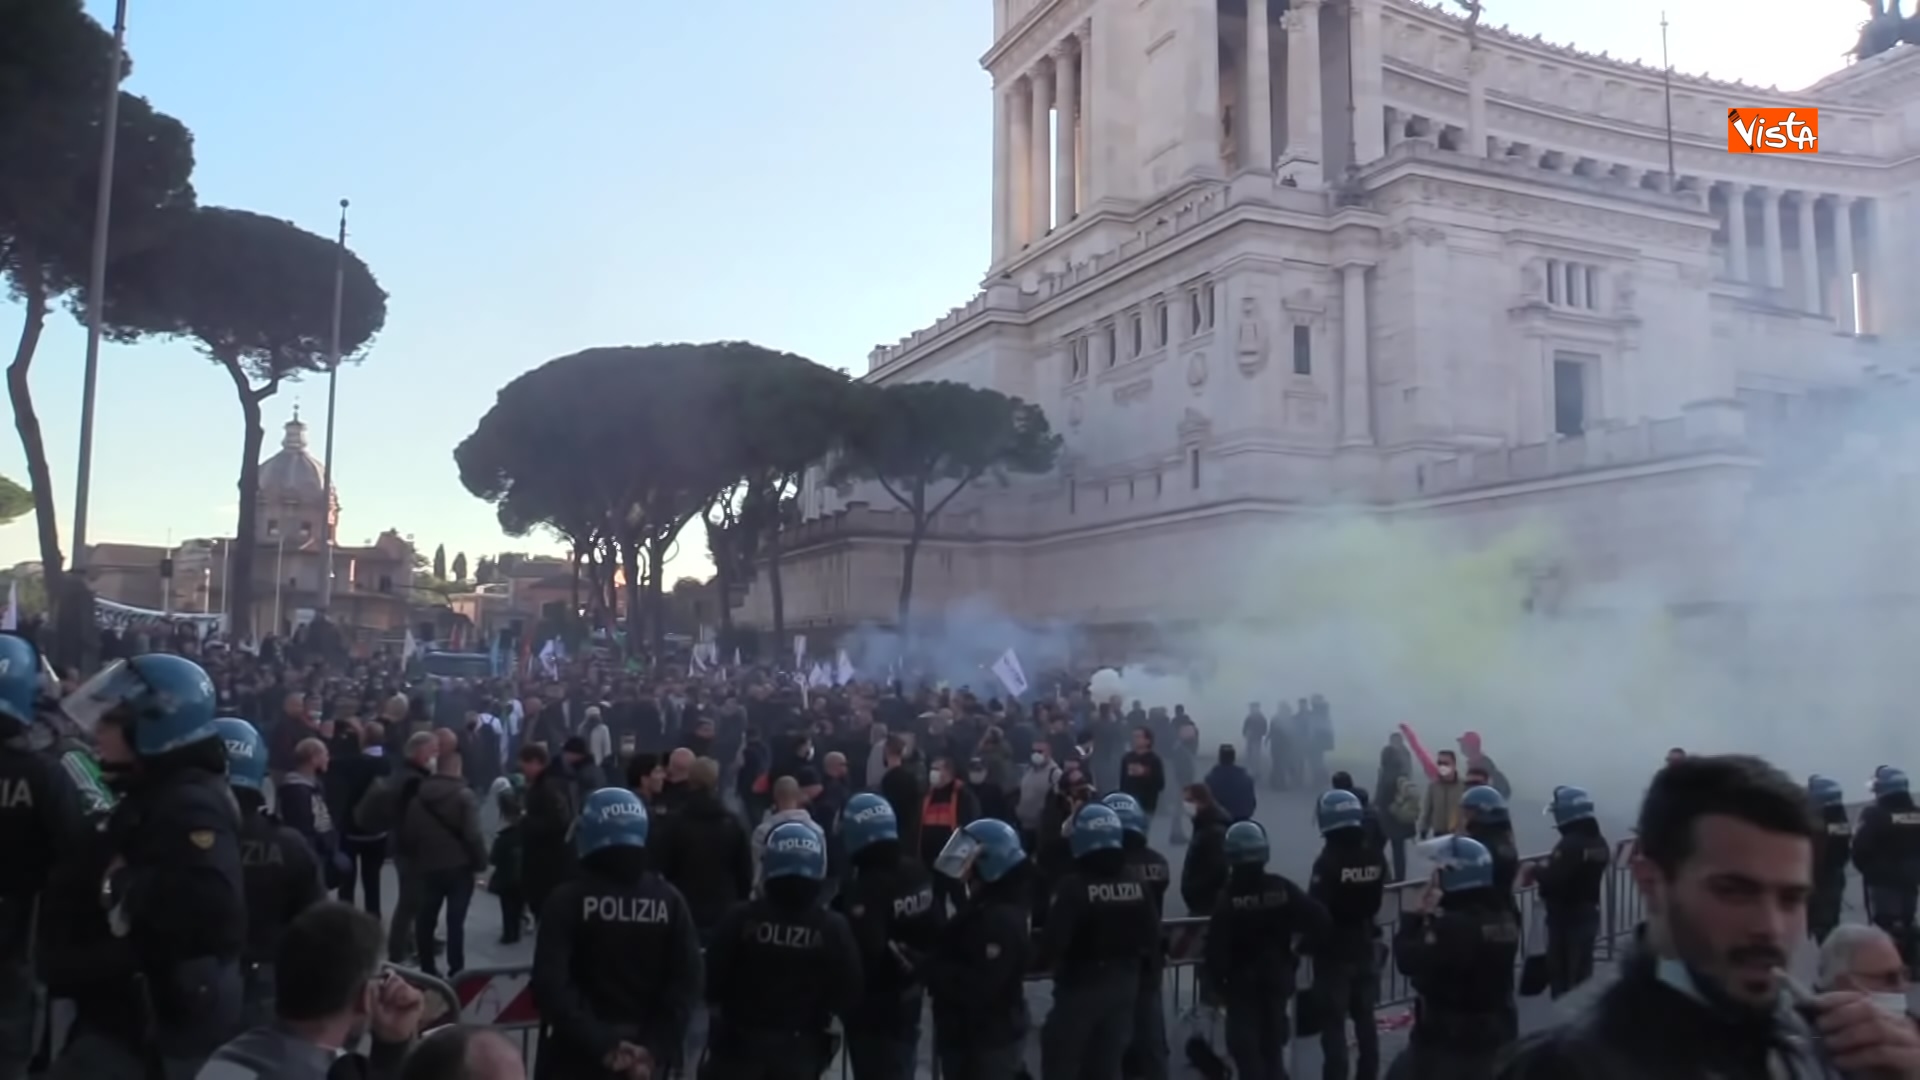 24-11-21 Protesta dei tassisti a Roma contro il Ddl concorrenza le immagini_03